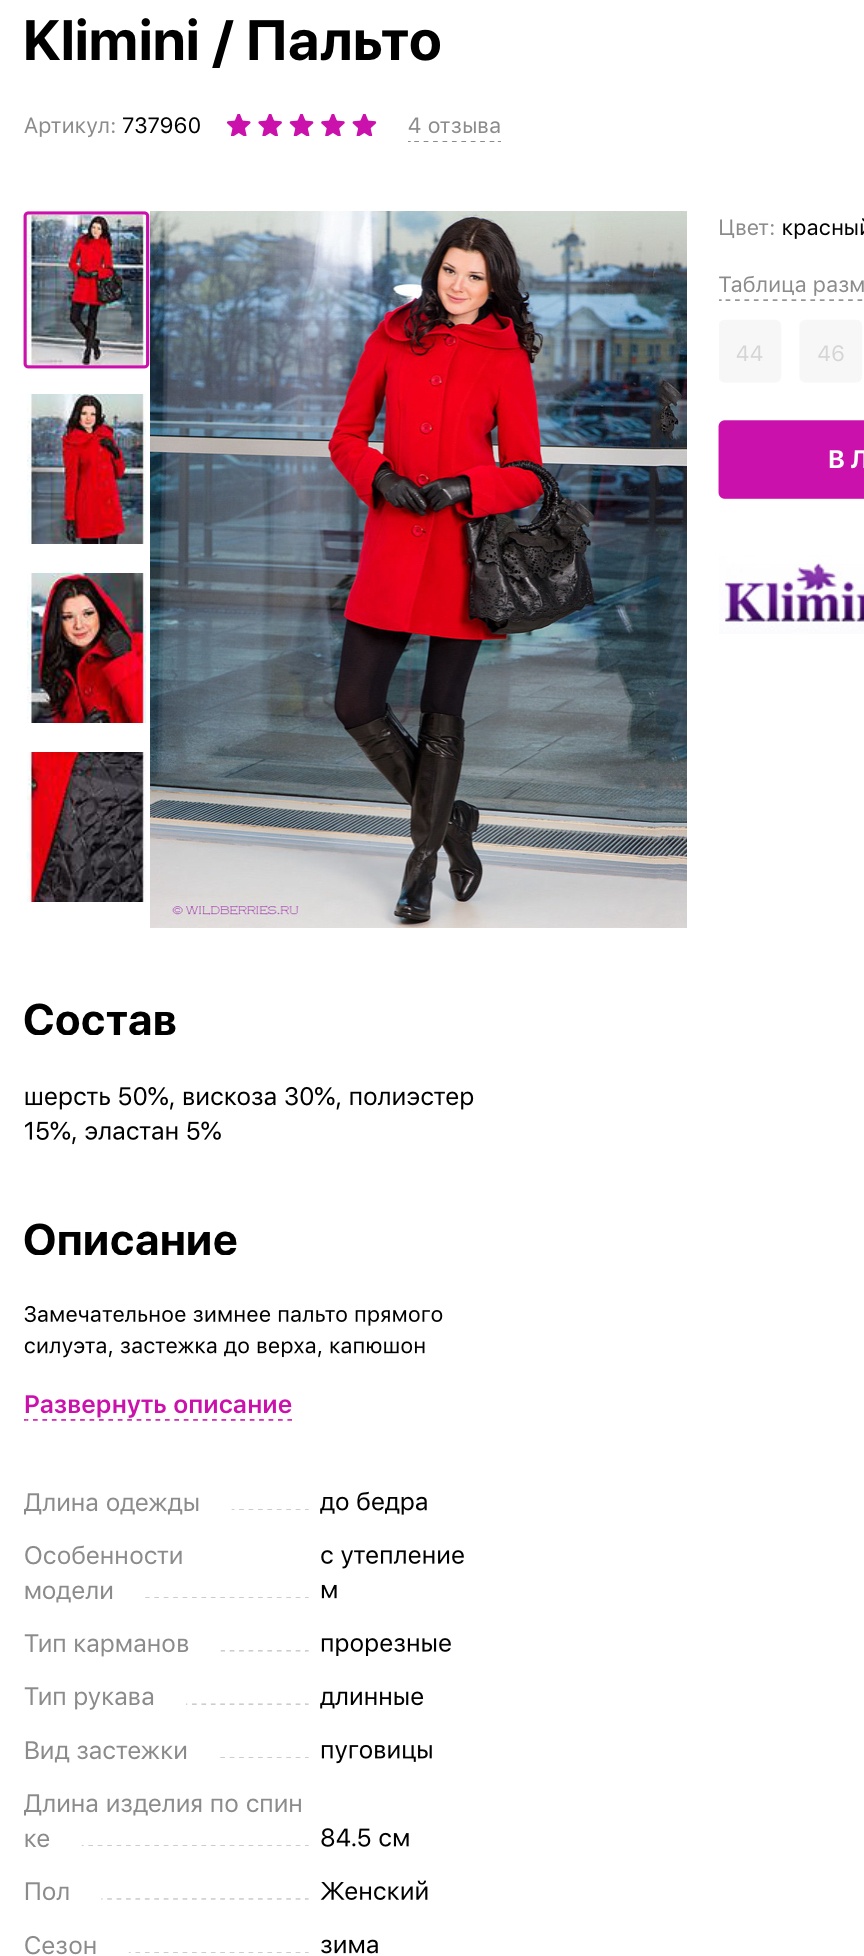 Пальто Klimini размер ru44-46 S M